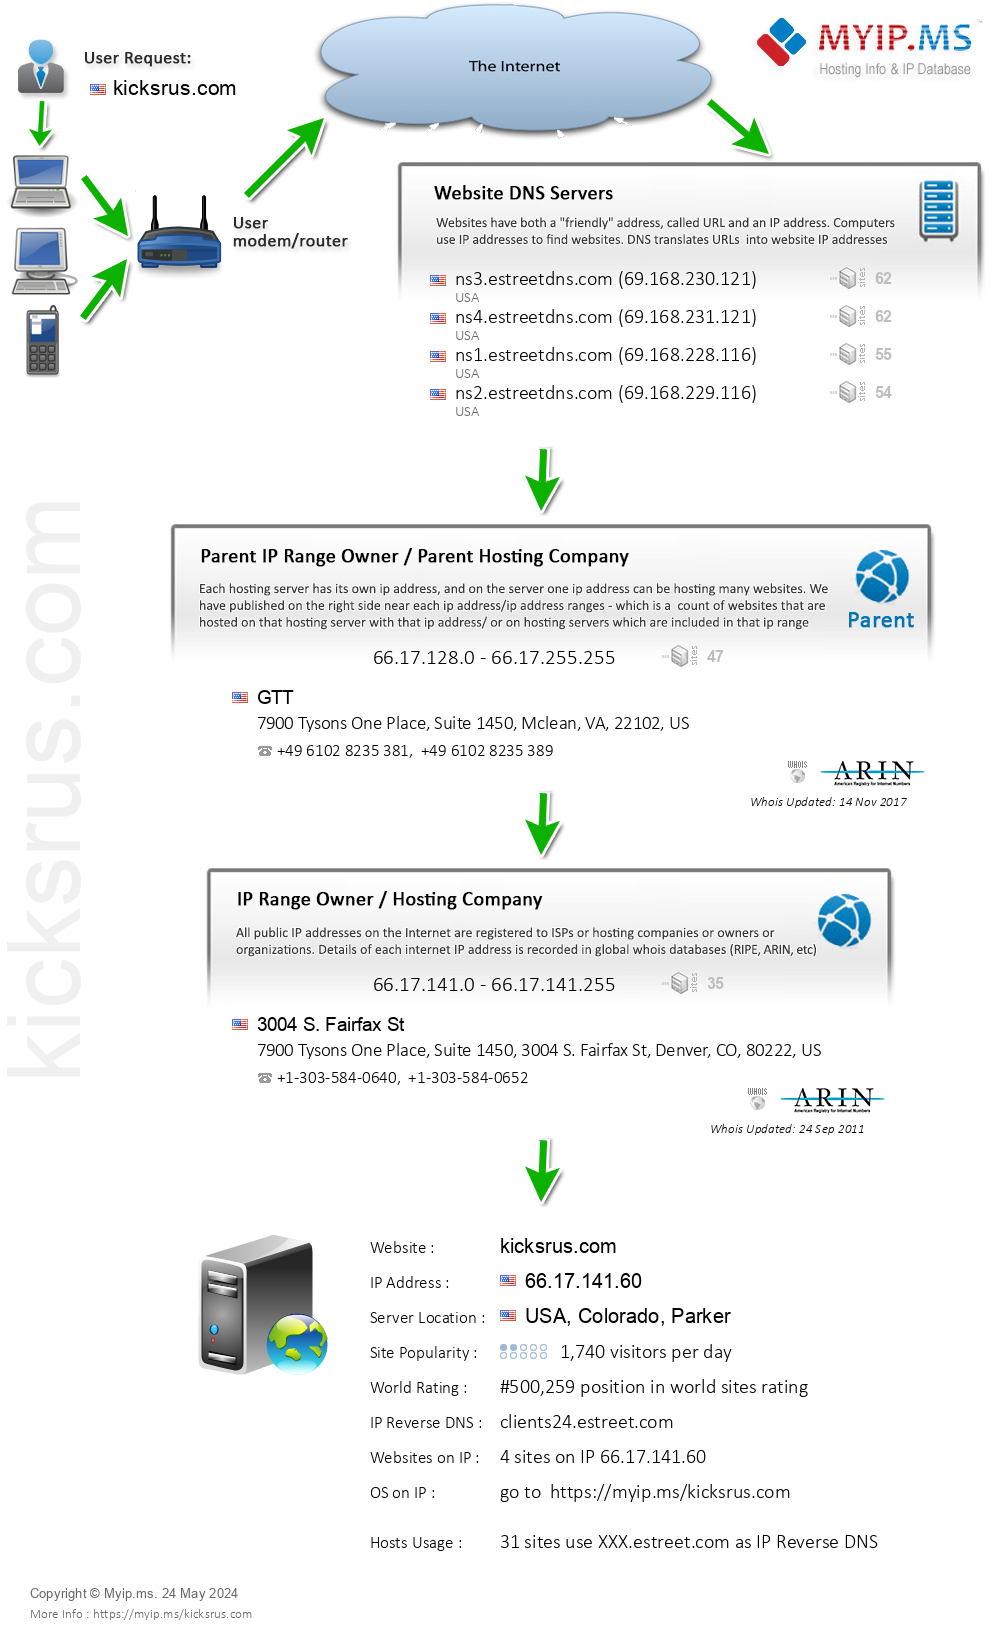 Kicksrus.com - Website Hosting Visual IP Diagram